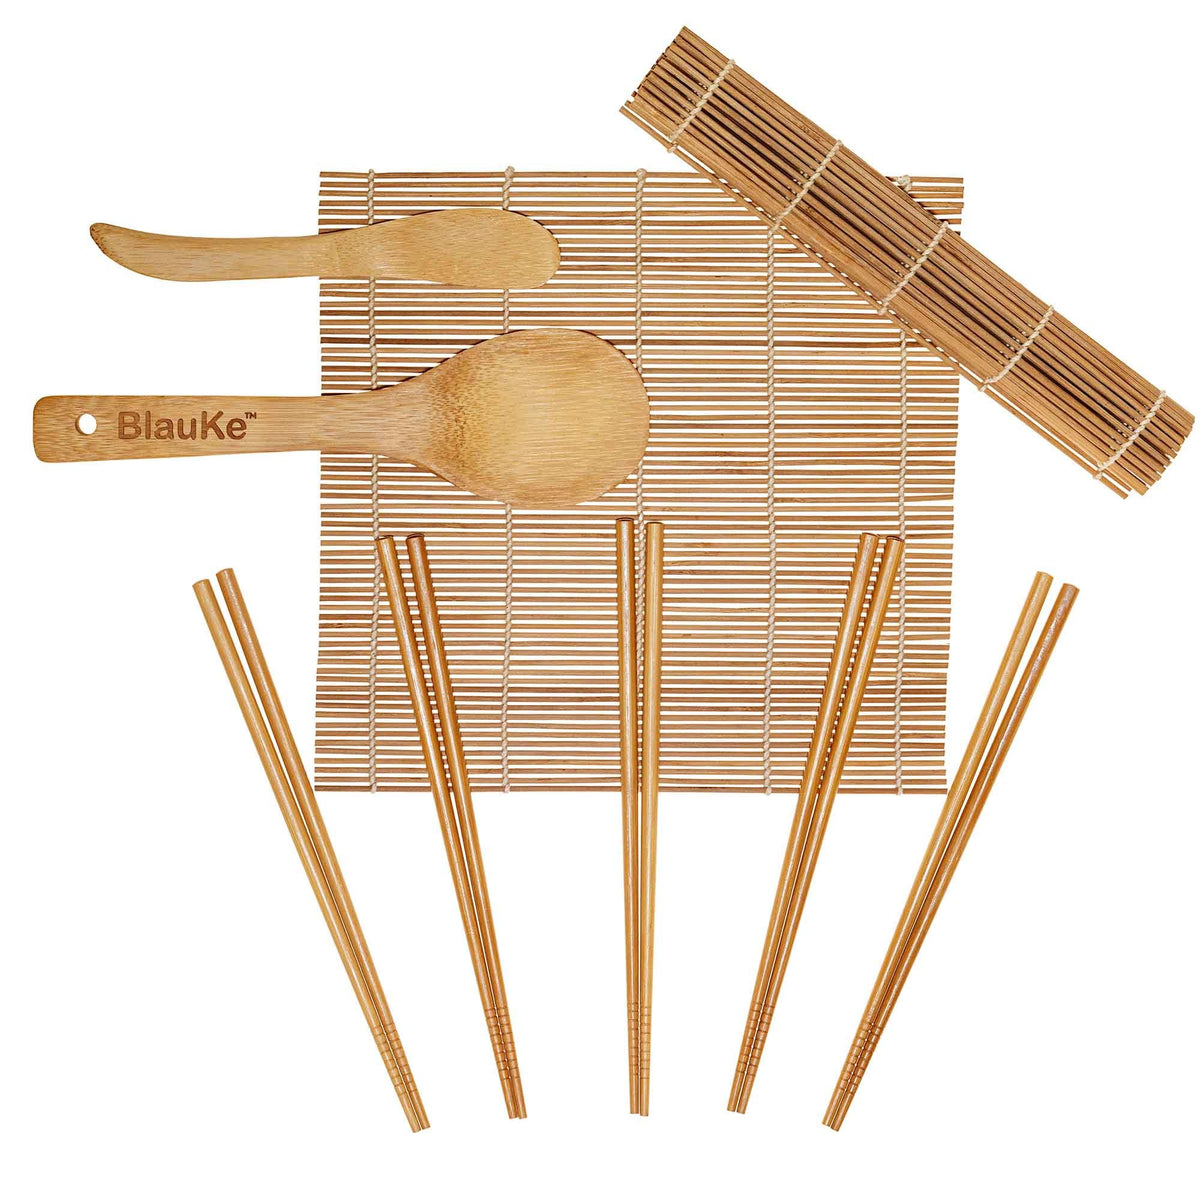 Paddle 5 Pairs of Chopsticks Bamboo Sushi Rolling Mats 13Pcs Sushi Making Kit DIY Beginner Sushi Kit